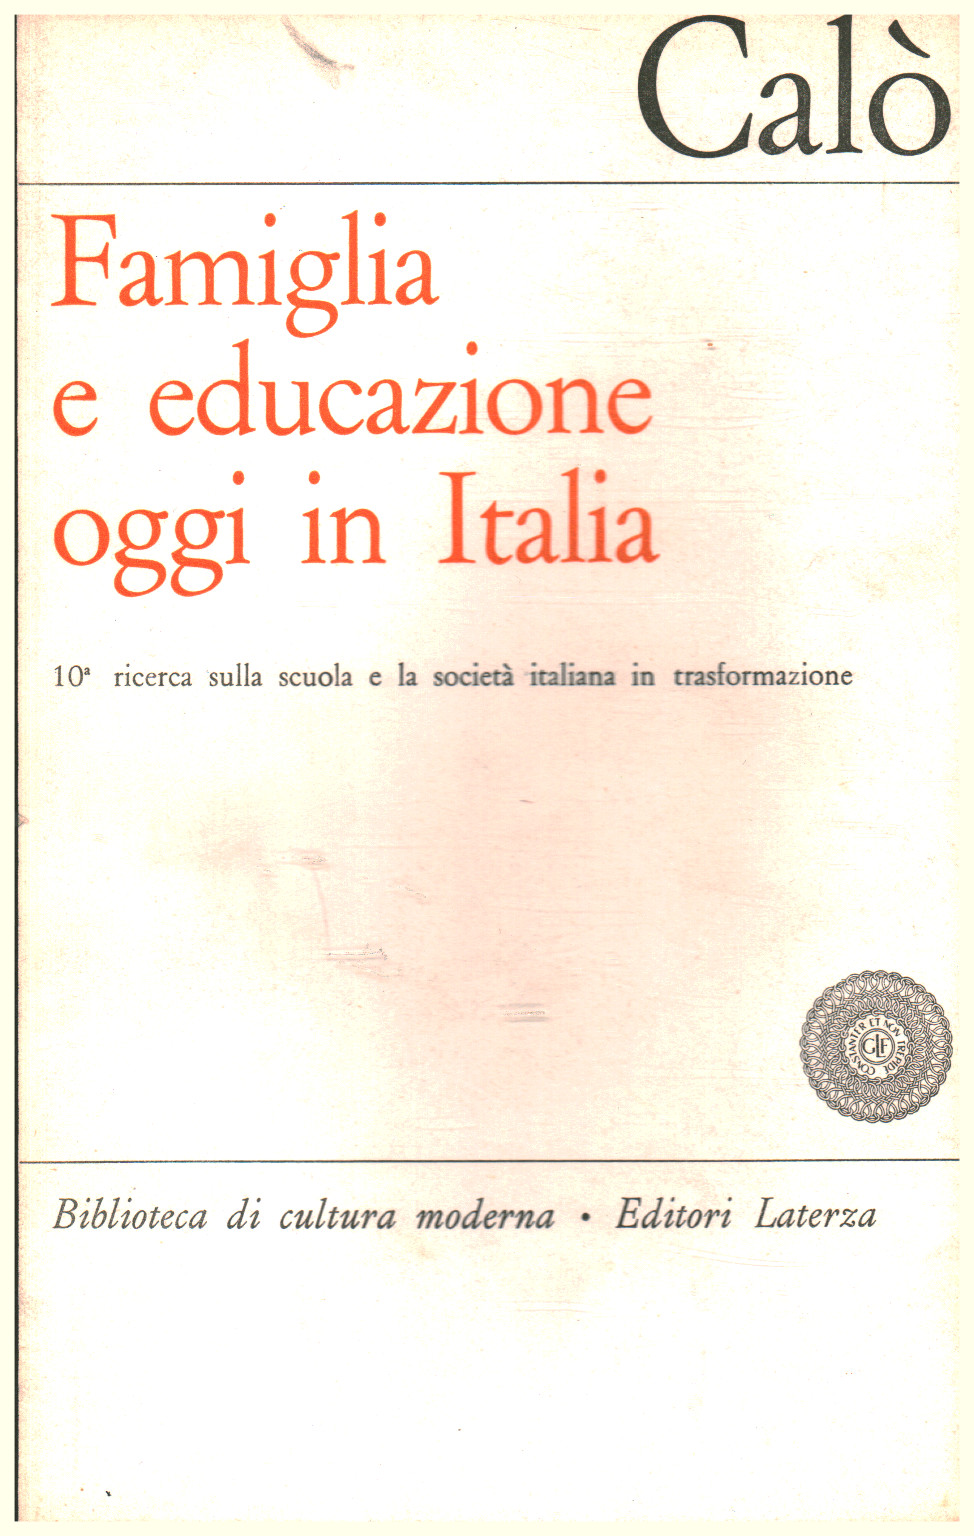 De la famille et de l'éducation aujourd'hui en Italie, Giovanni Calò